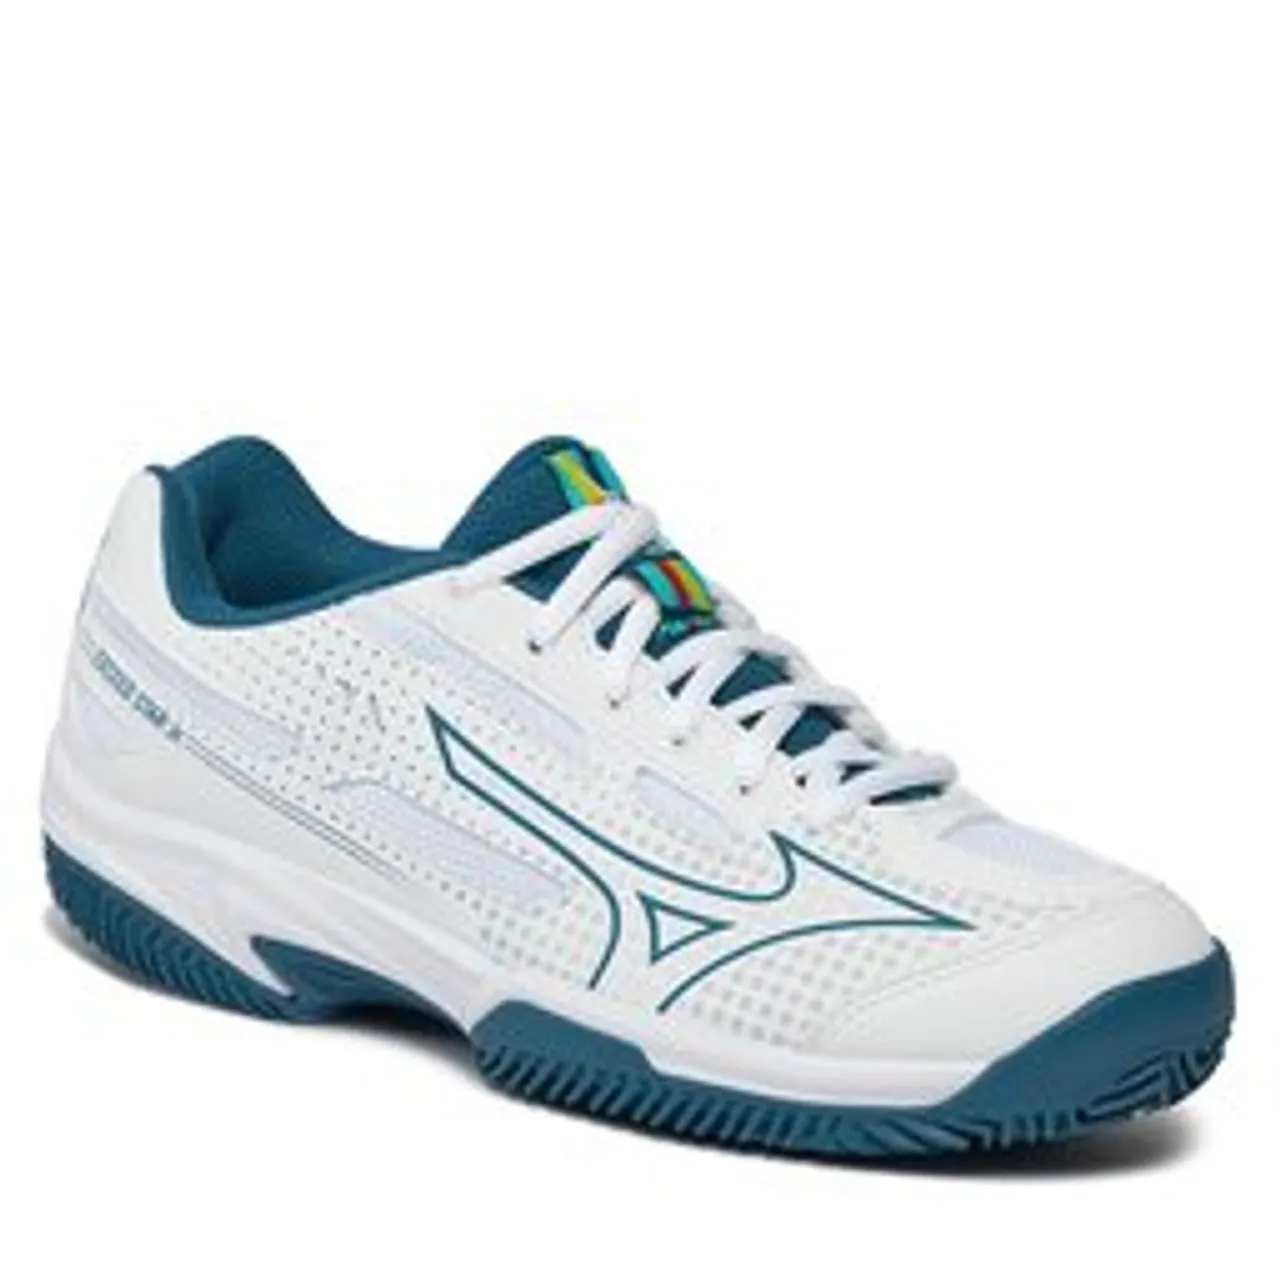 Schuhe Mizuno Exceed Star Jr. CC 61GC225530 White/Moroccanblue/Turquoise